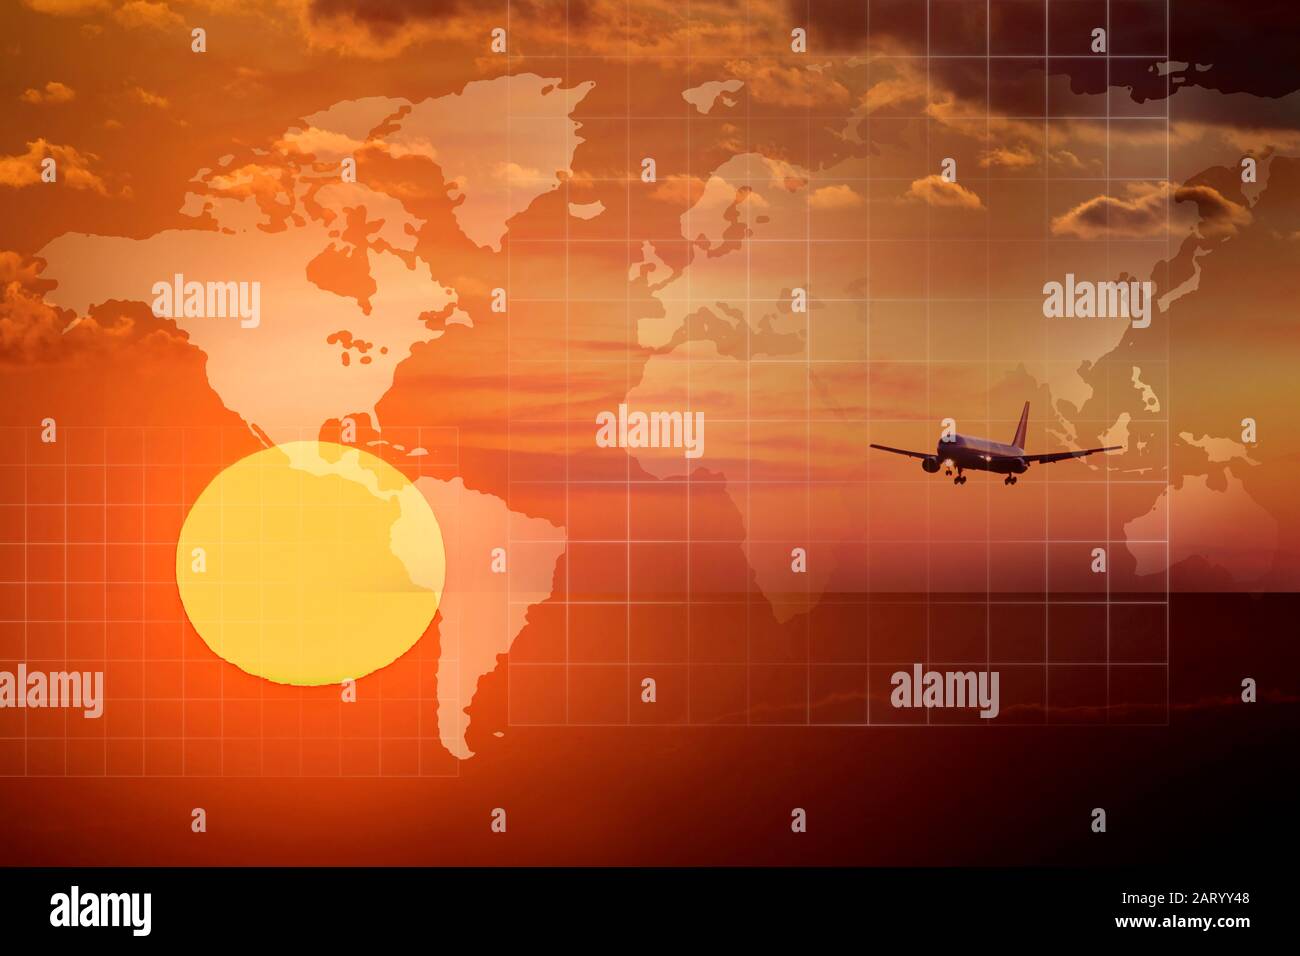 Doppelbelichtung des Flugzeugs, das in Himmel und Weltkarte fliegt Stockfoto